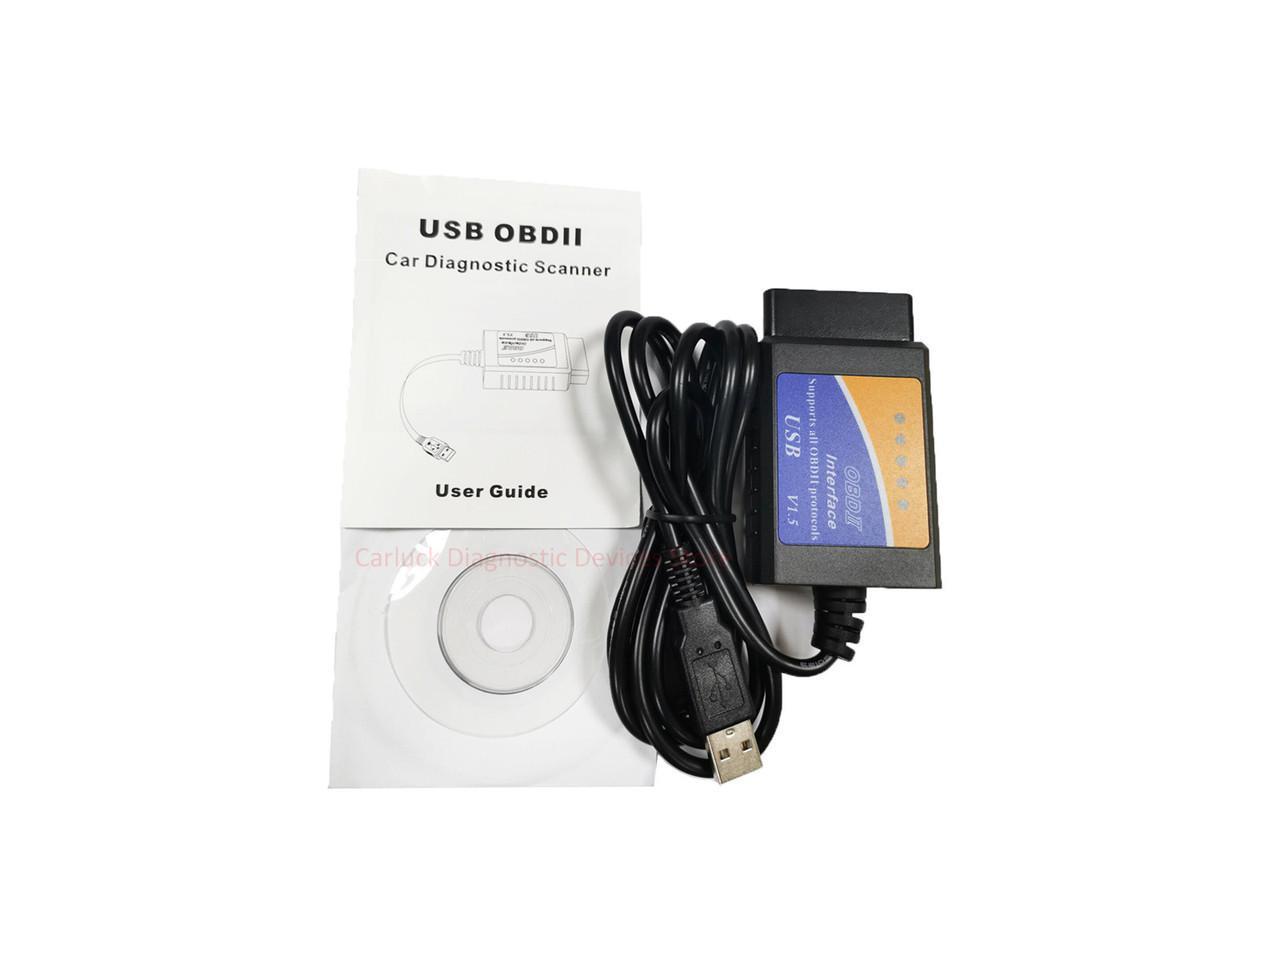 ELM 327 OBDII OBD2 CAN-BUS USB Auto Diagnostic Code Scanner Reader Tool V1.5 